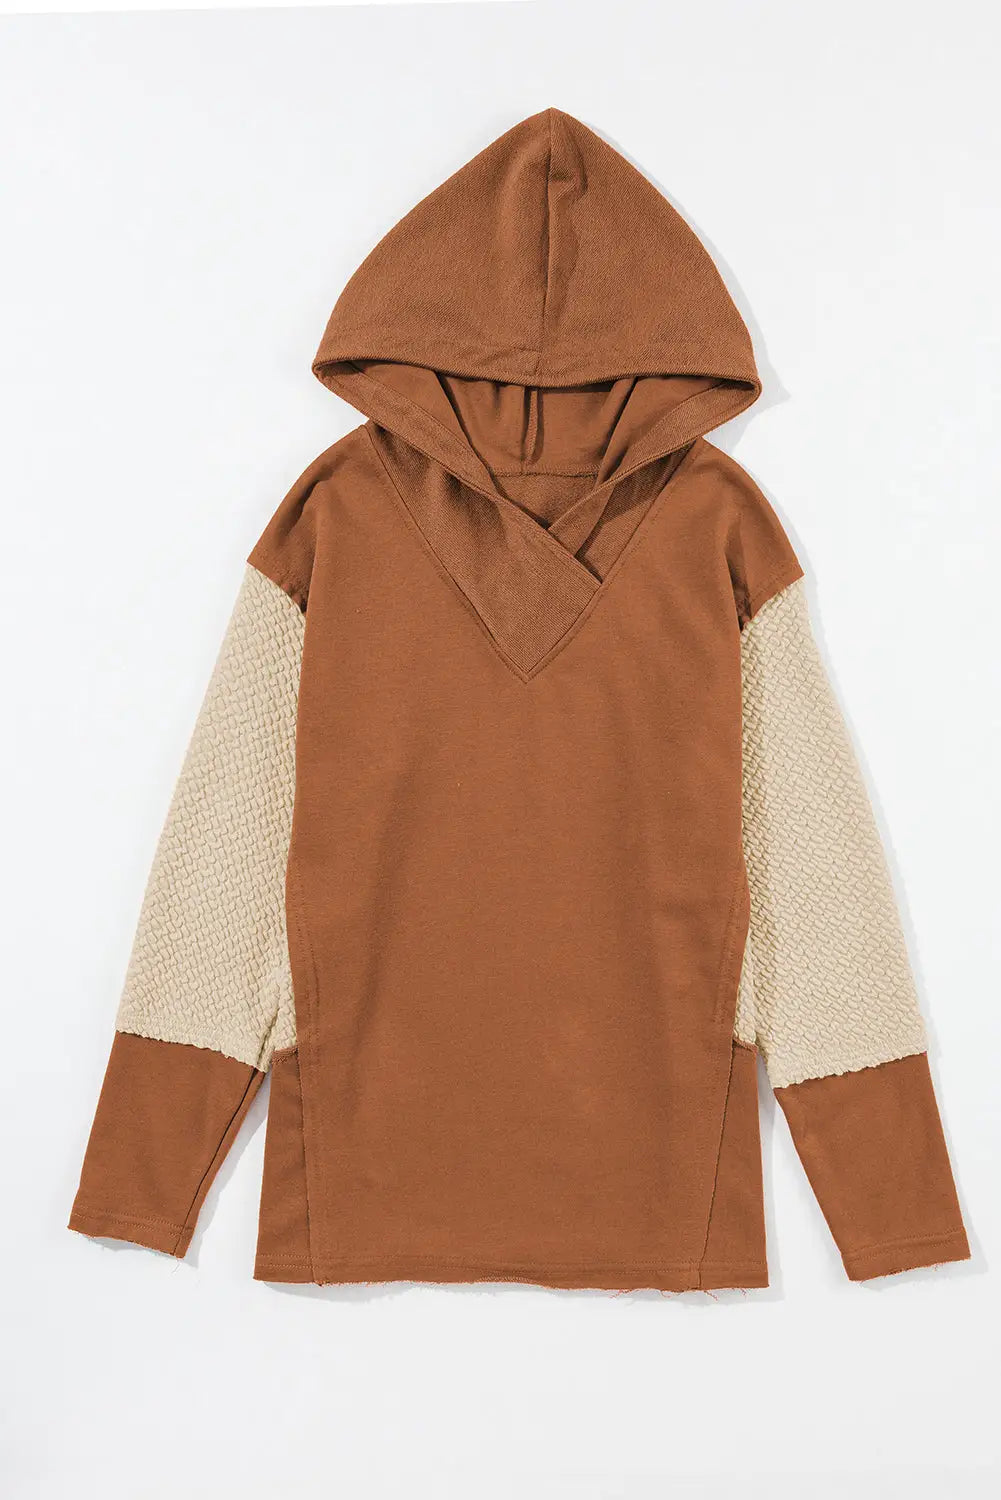 Brown textured knit patchwork leopard hoodie - sweatshirts & hoodies